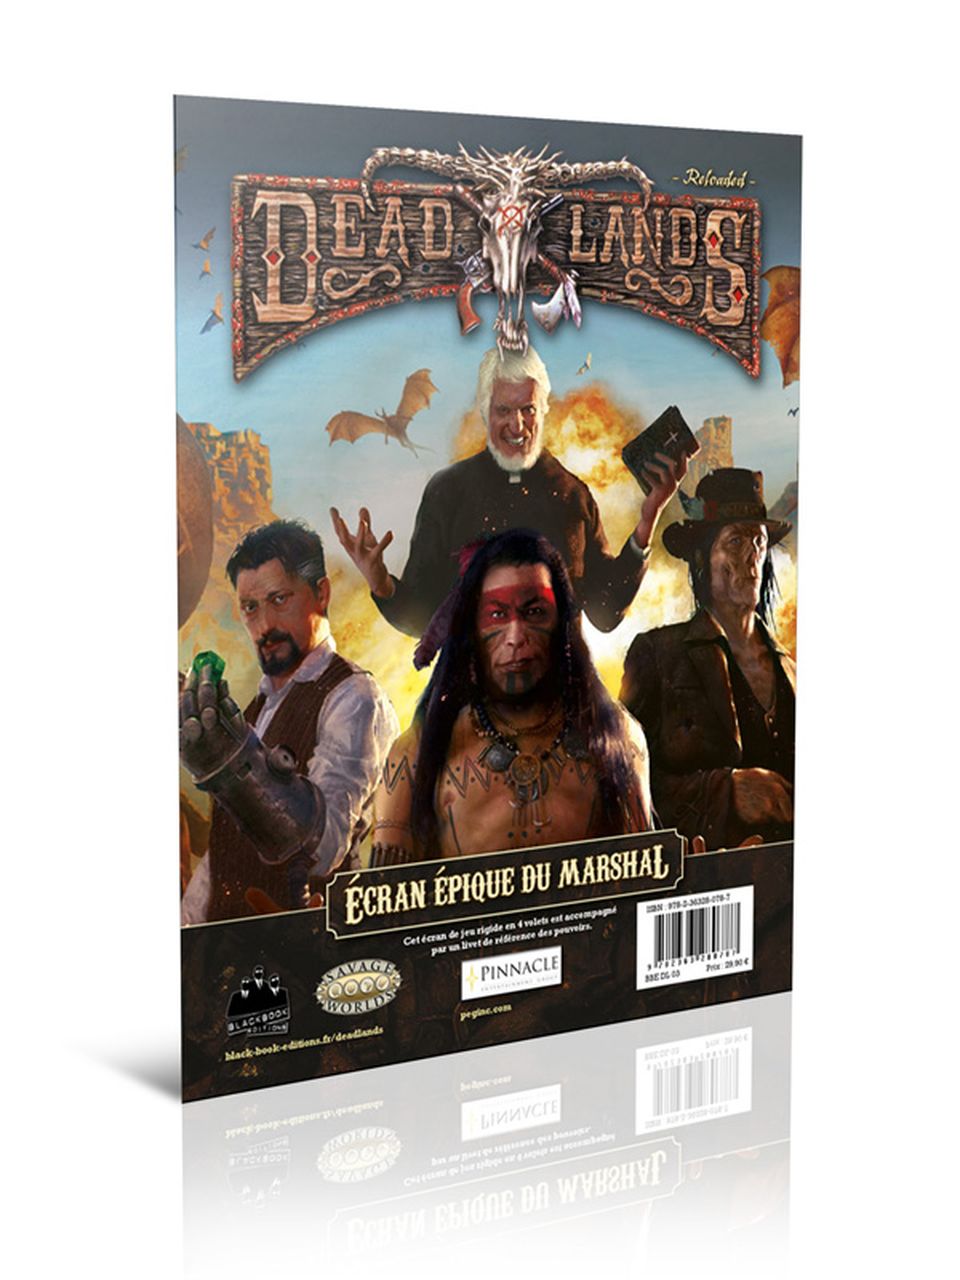 Deadlands Reloaded - Ecran épique du Marshal image